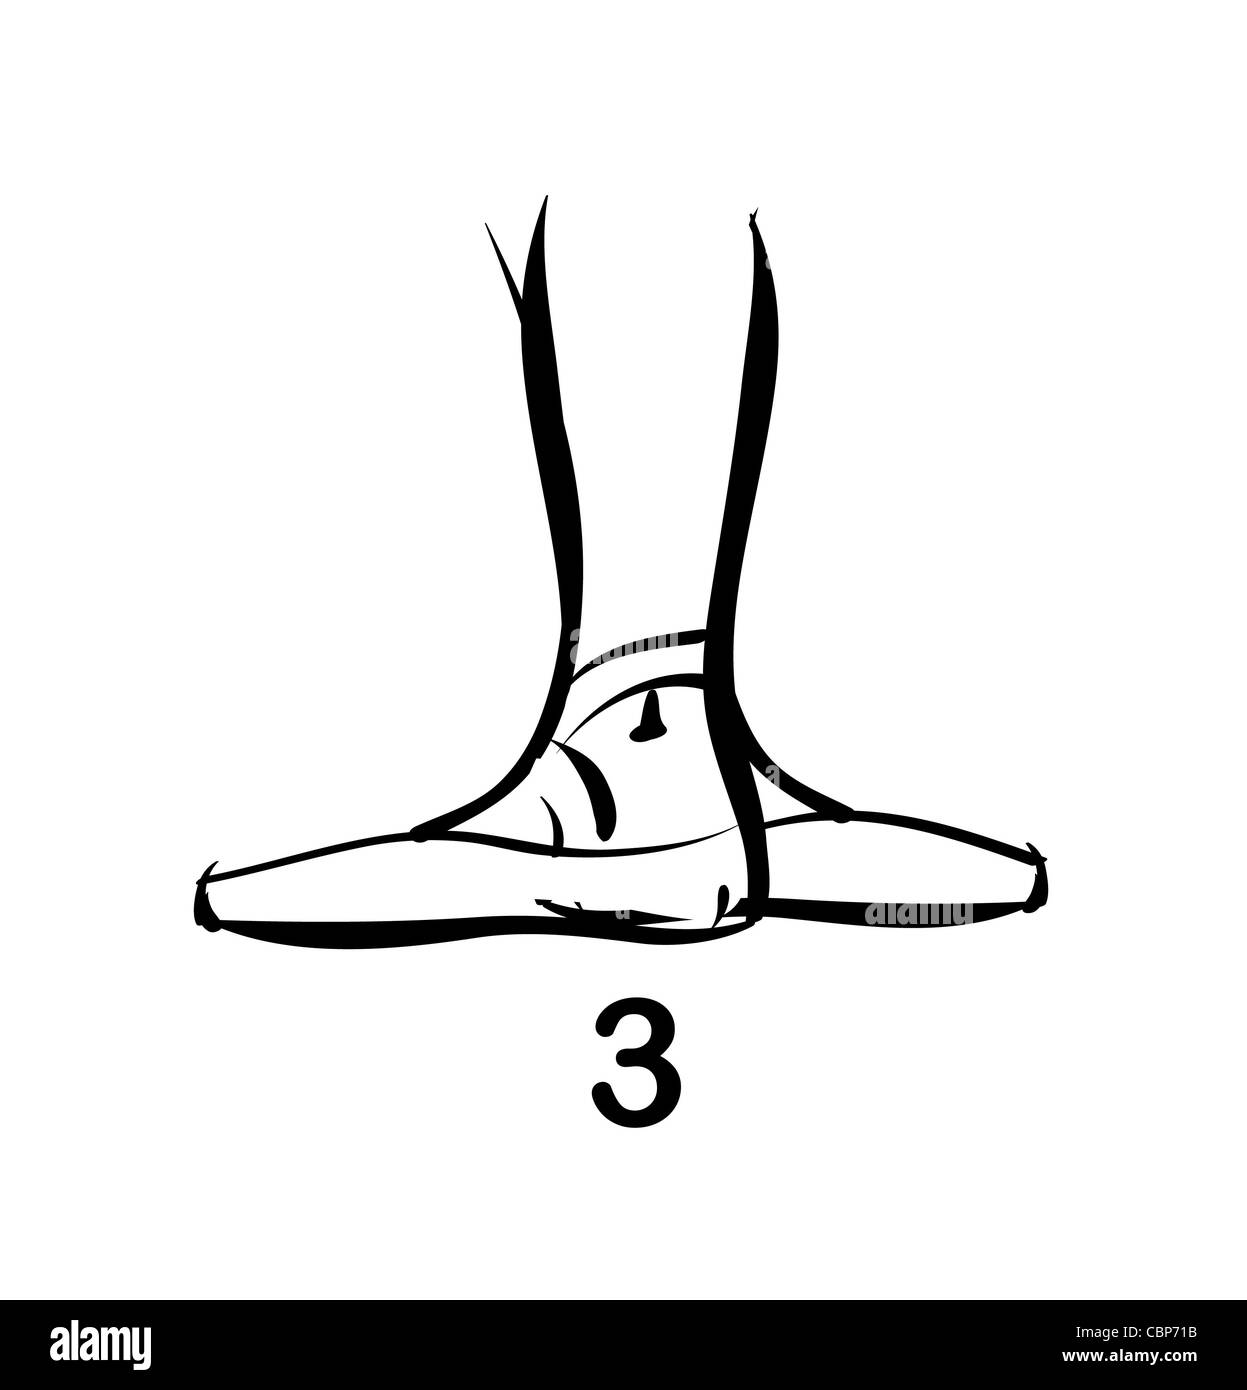 ballet feet position 3 illustration Stock Photo - Alamy